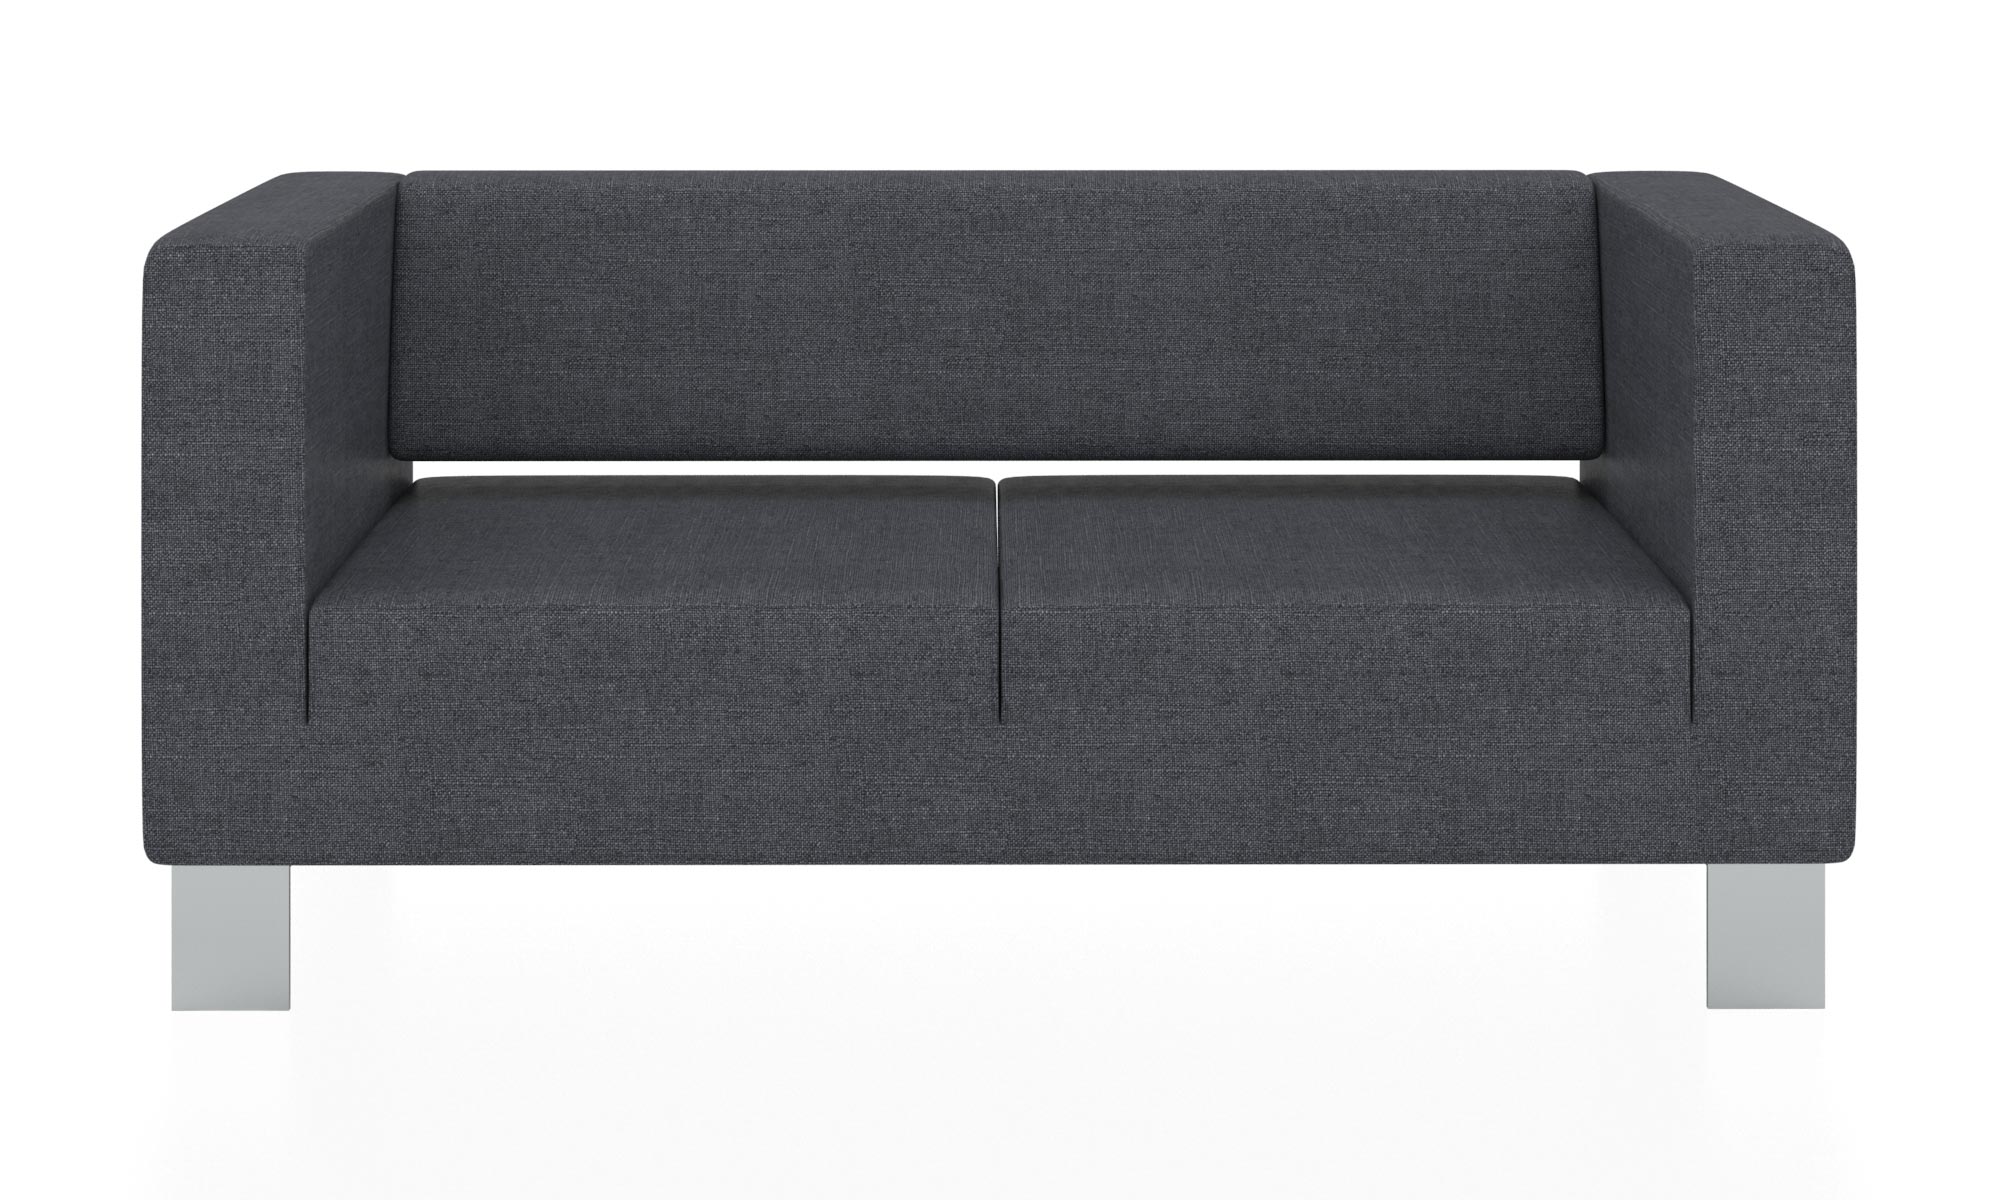 Современный двухместный диван с обивкой из ткани. Цвет серый (Flash 17).